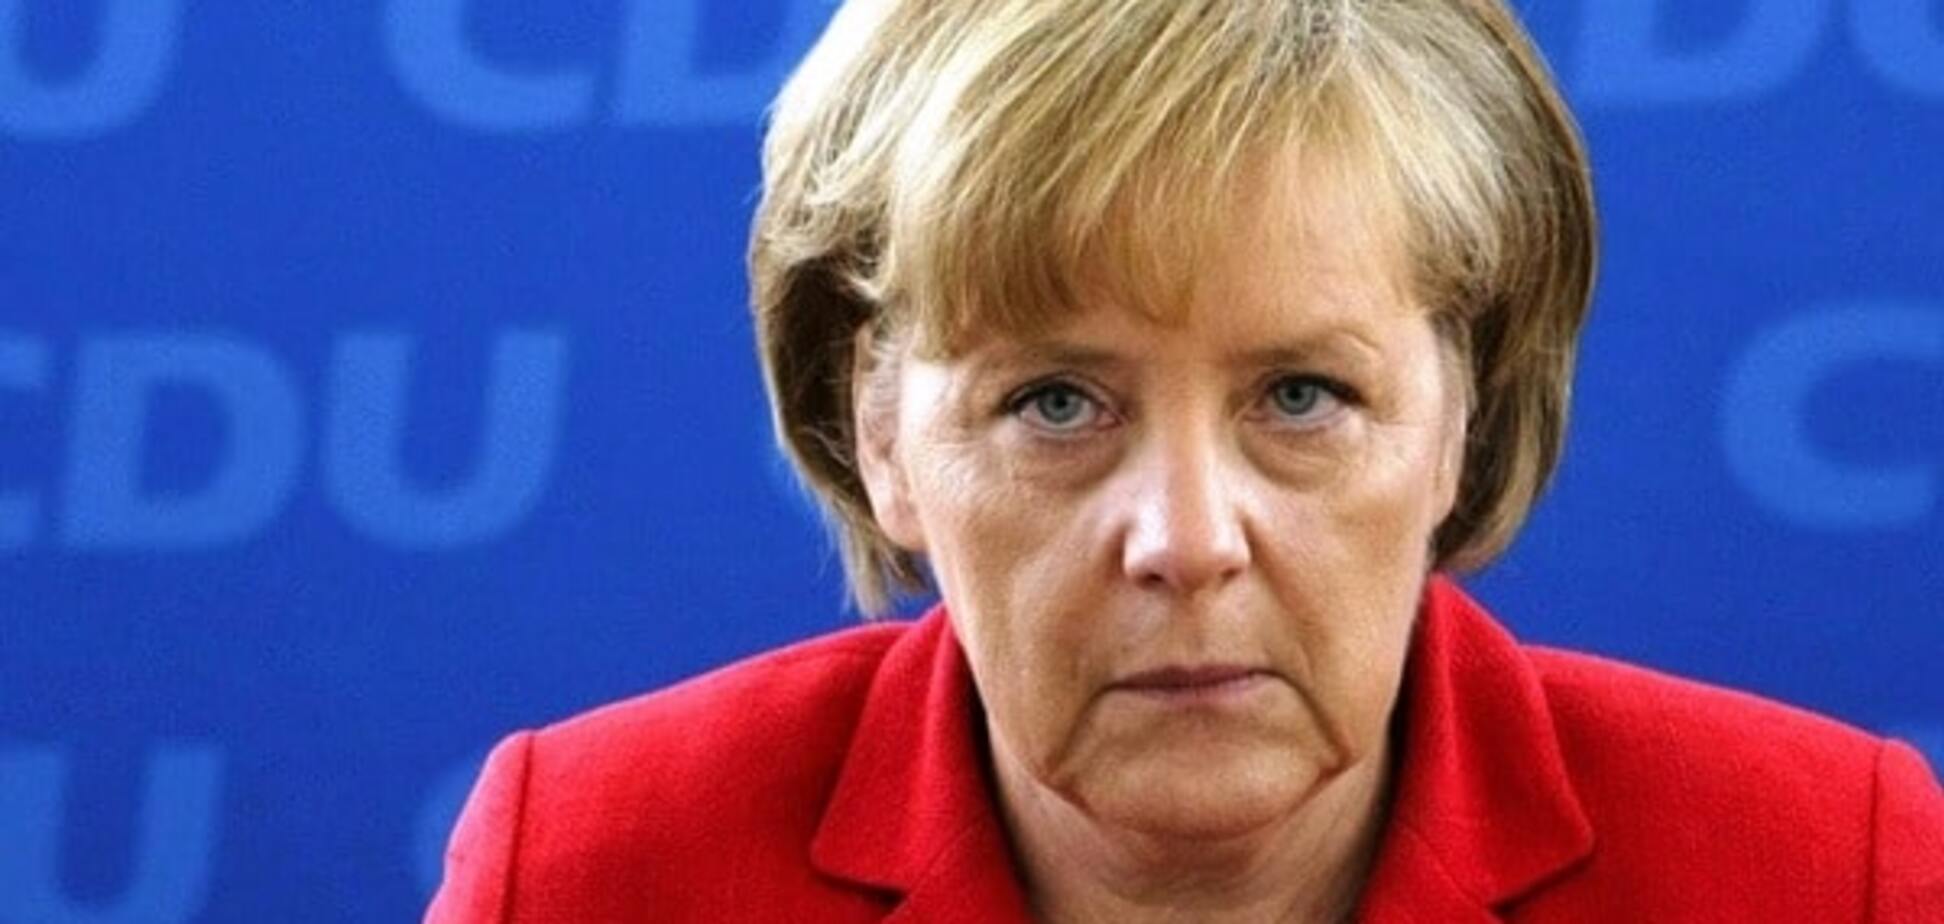 Найближчі тижні стануть вирішальними: Меркель поговорила з Порошенком про Донбас